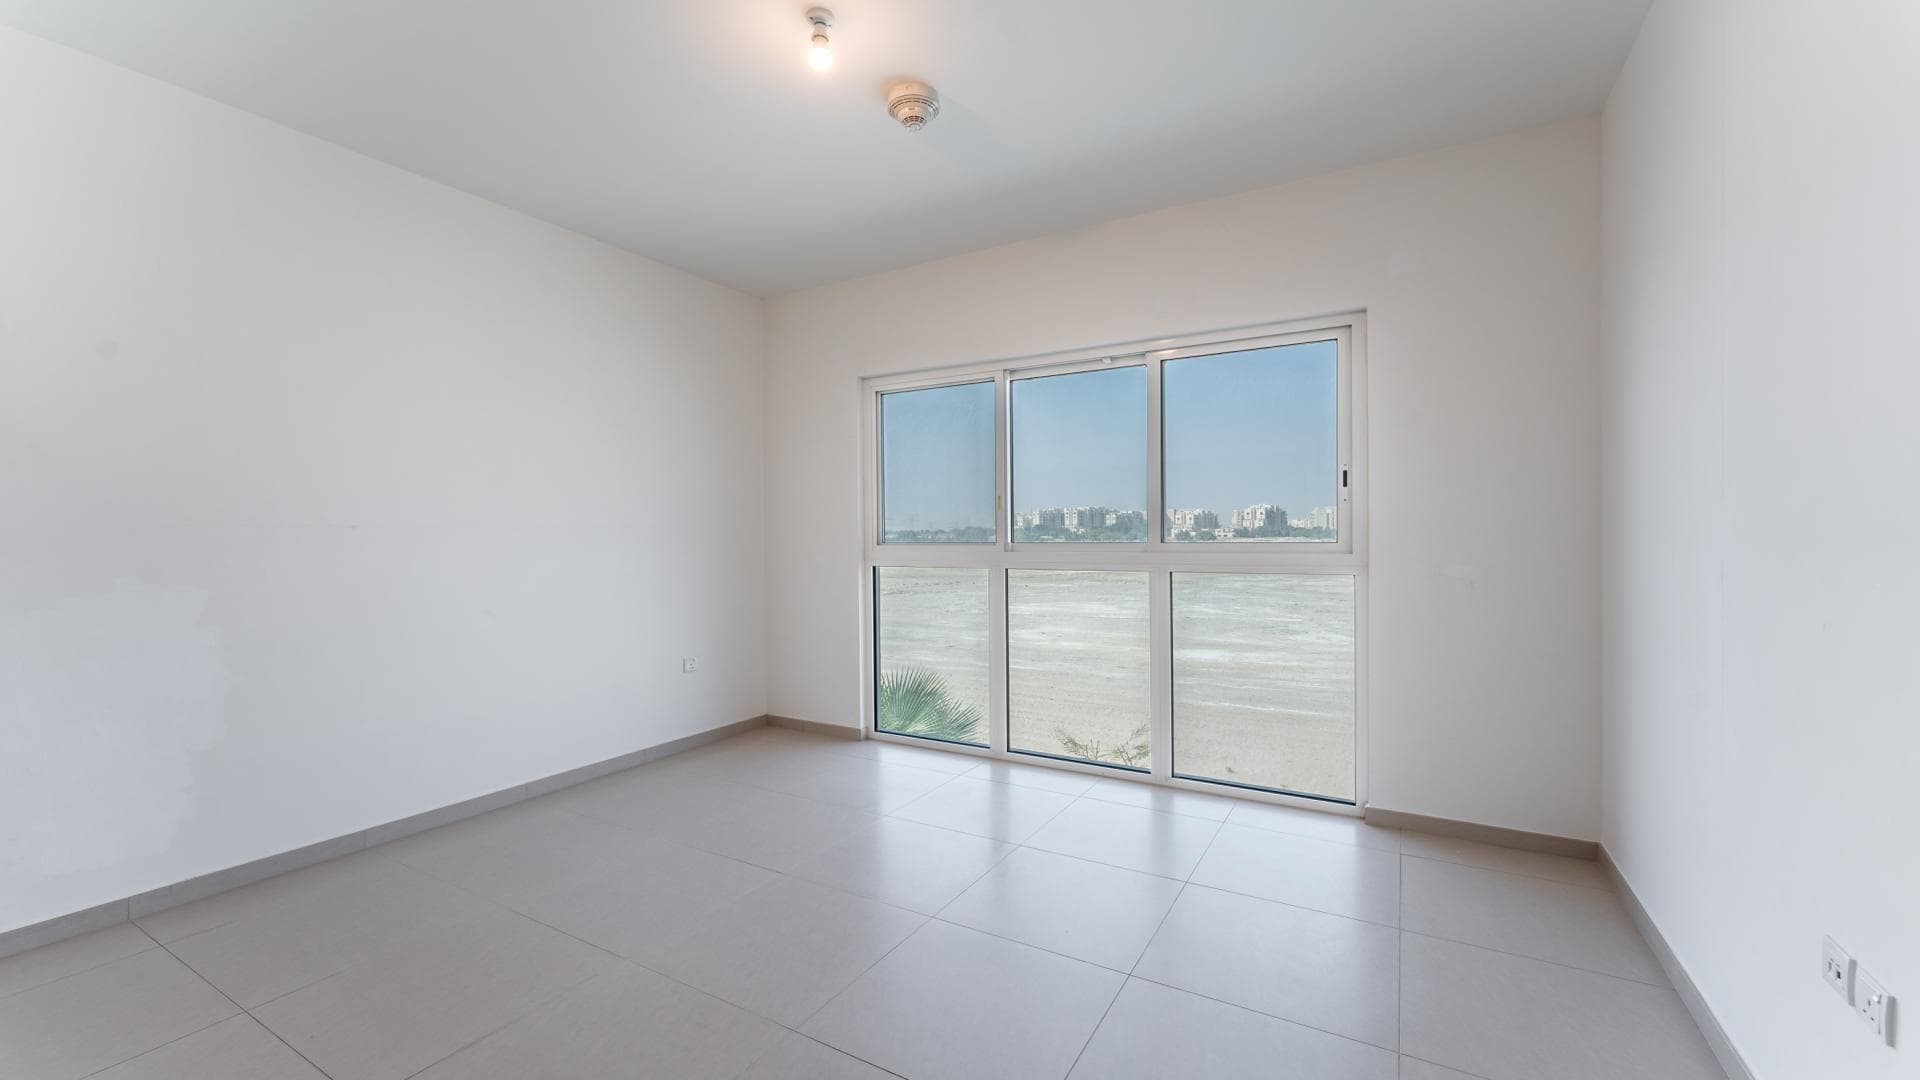 5 Bedroom Villa For Rent Al Kazim Tower 1 Lp17029 13d795884fc7ac00.jpg